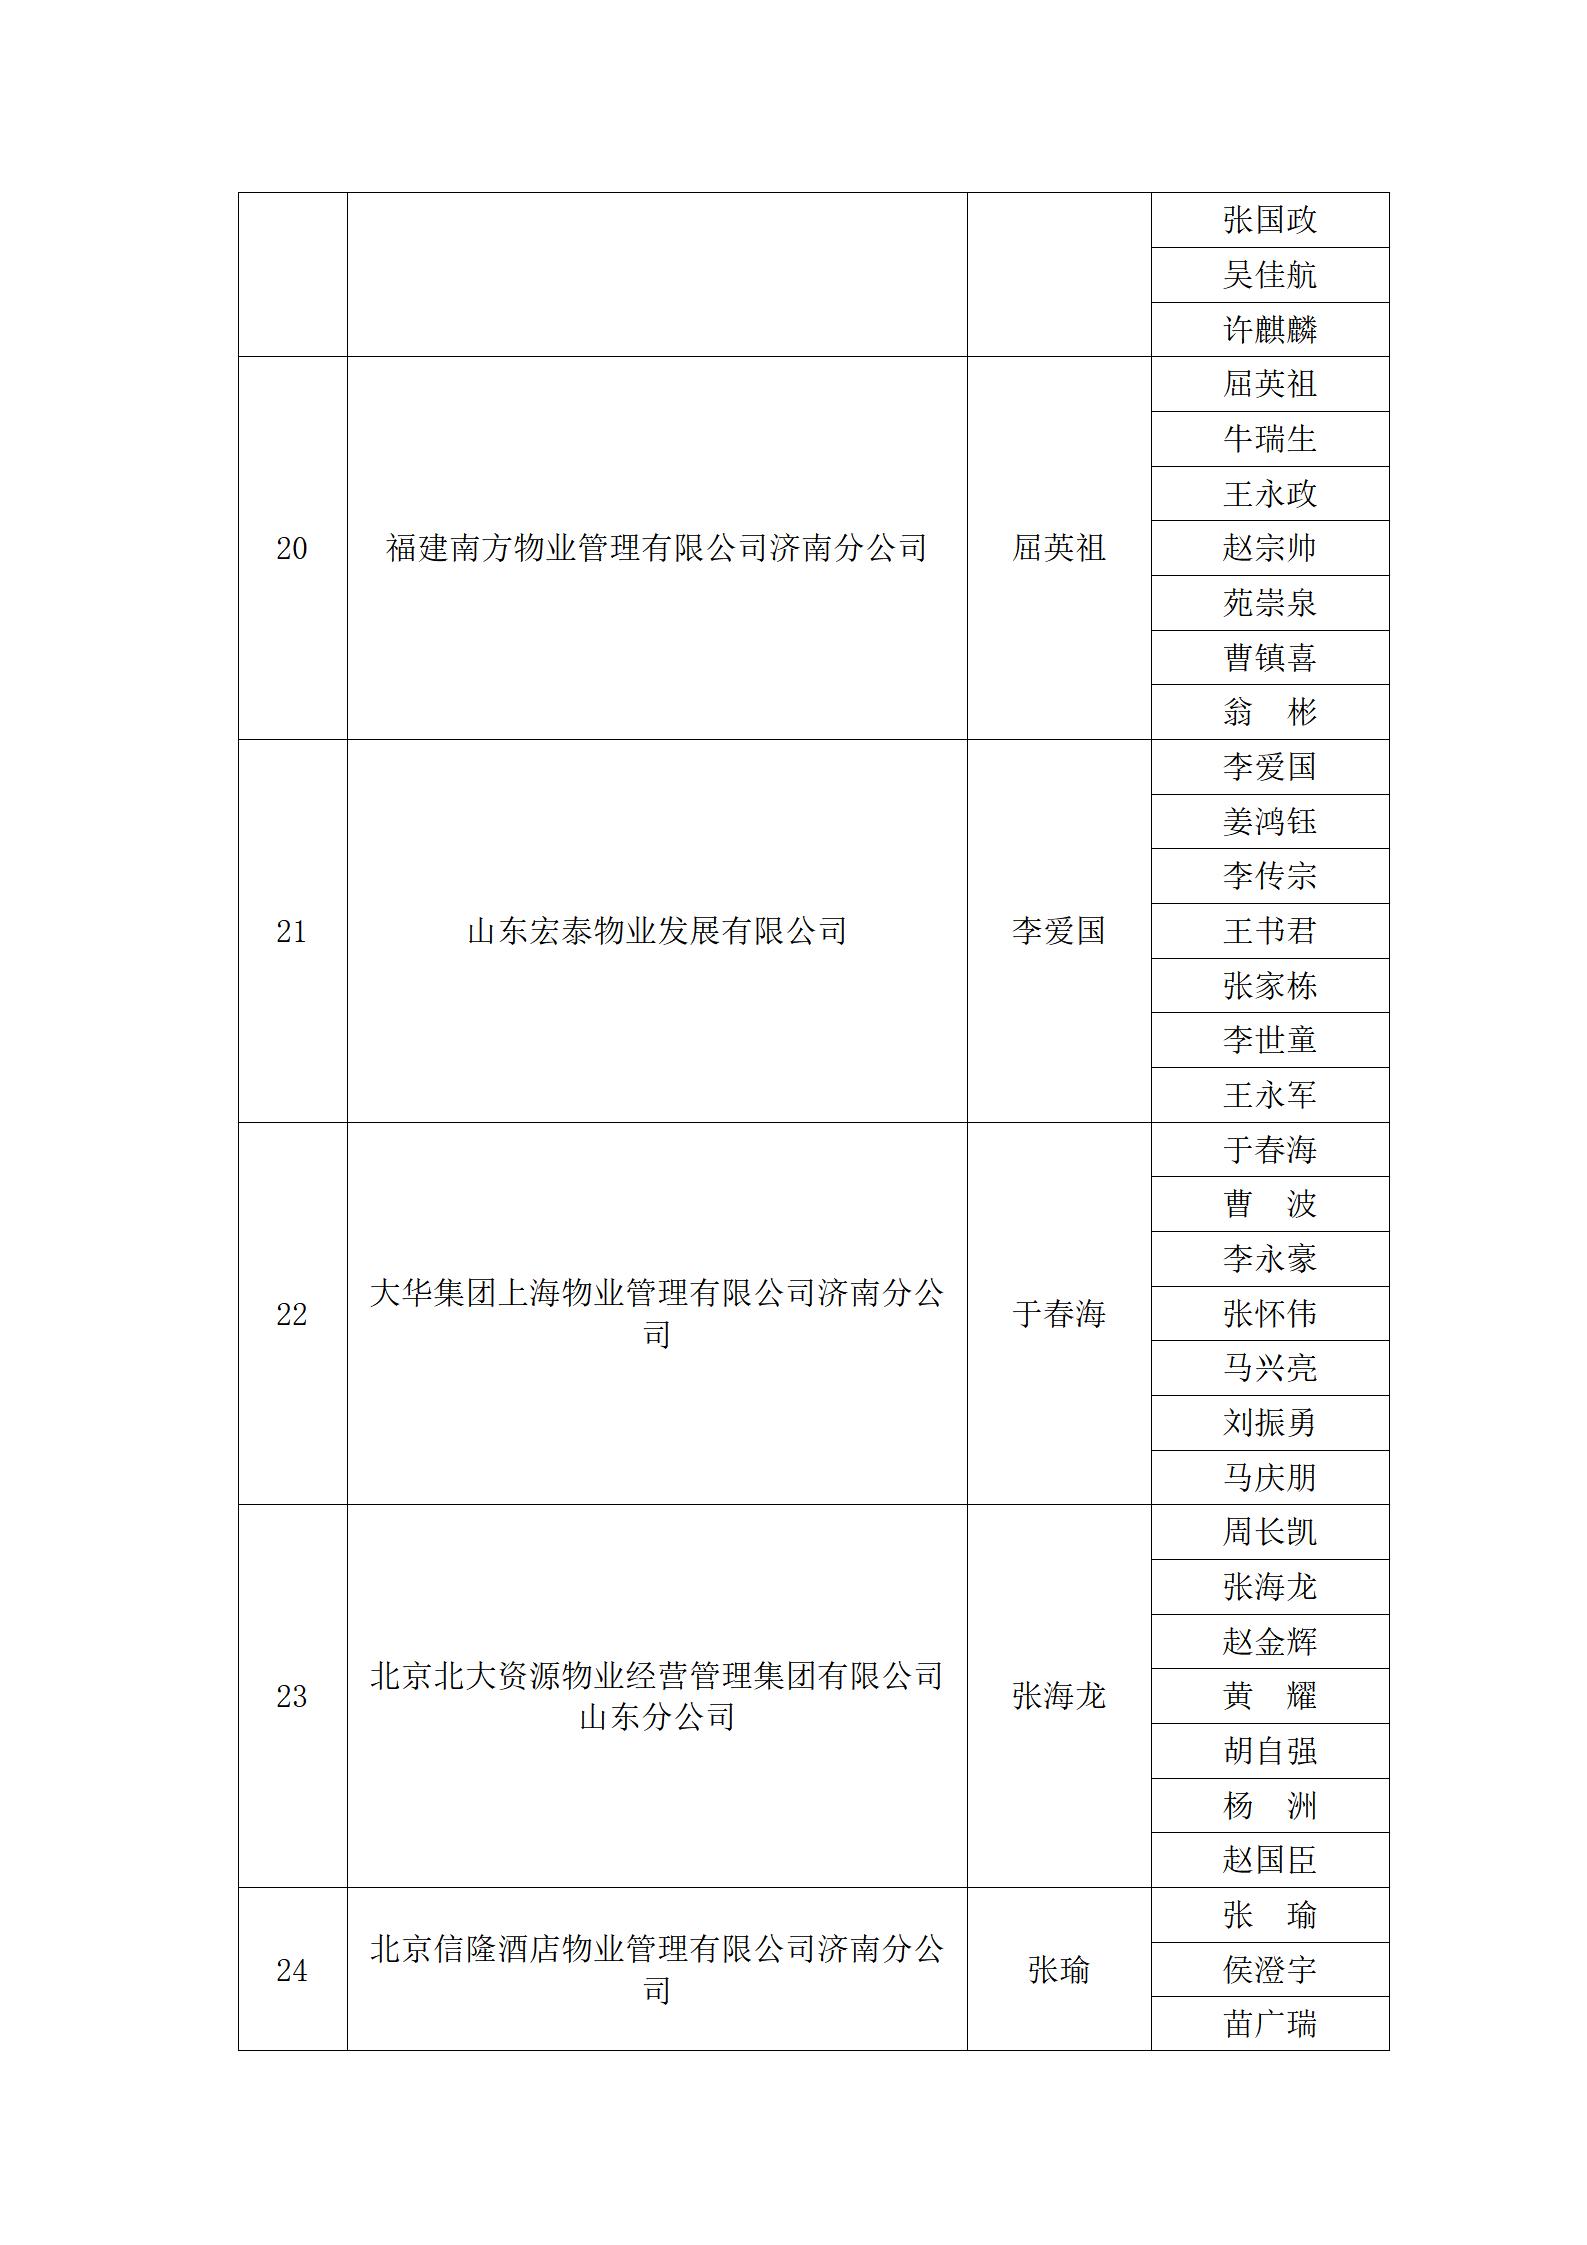 关于“明德杯”第六届济南市物业服务行业职业技能竞赛选手名单的公示_21